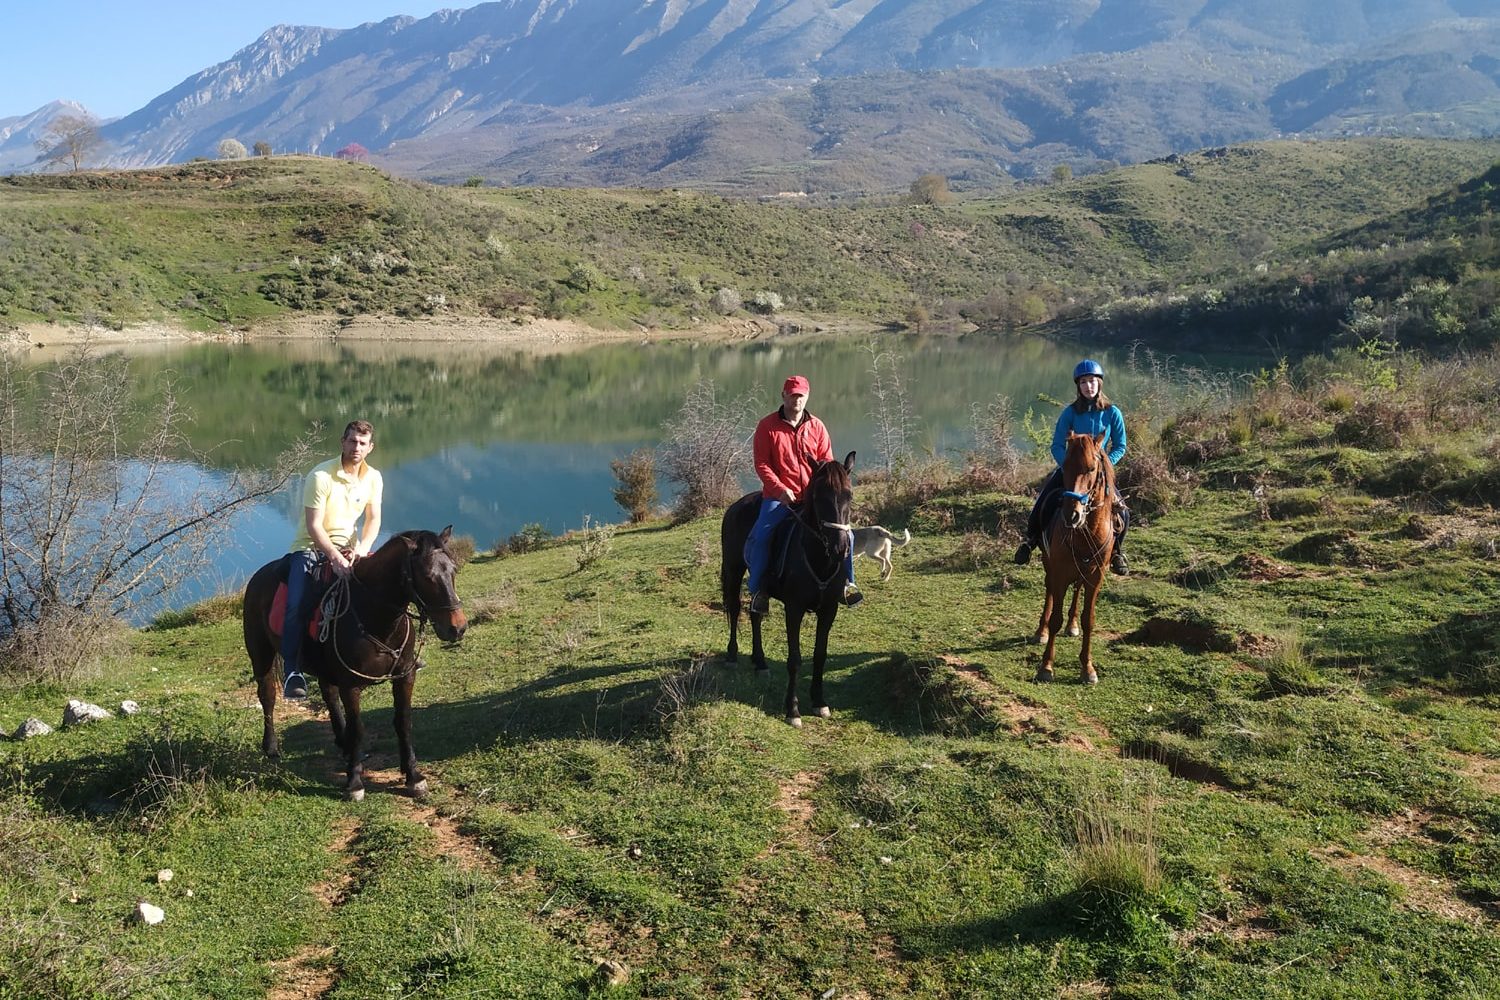 Ture me Kuaj Gjirokaster - Udhetime me Kuaj Gjirokaster - Guida Turistike me Kuaj - Guida me Kuaj ne Shqiperi - Caravan Horse Riding Albania